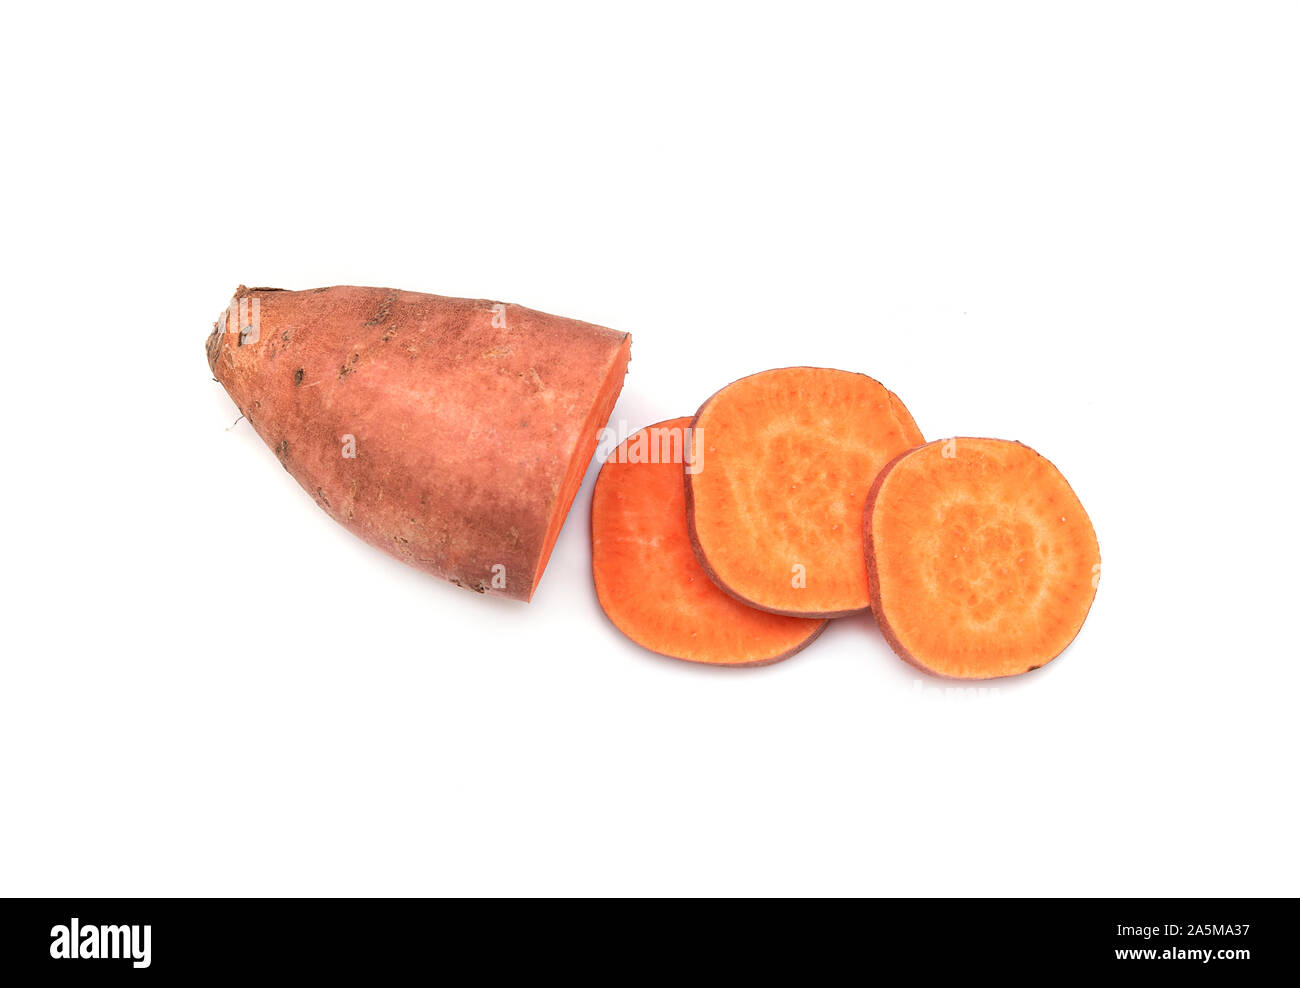 Sweet Potato, Potatoes, Potato yam or Ipomoea Batatas isolated on white Background Stock Photo